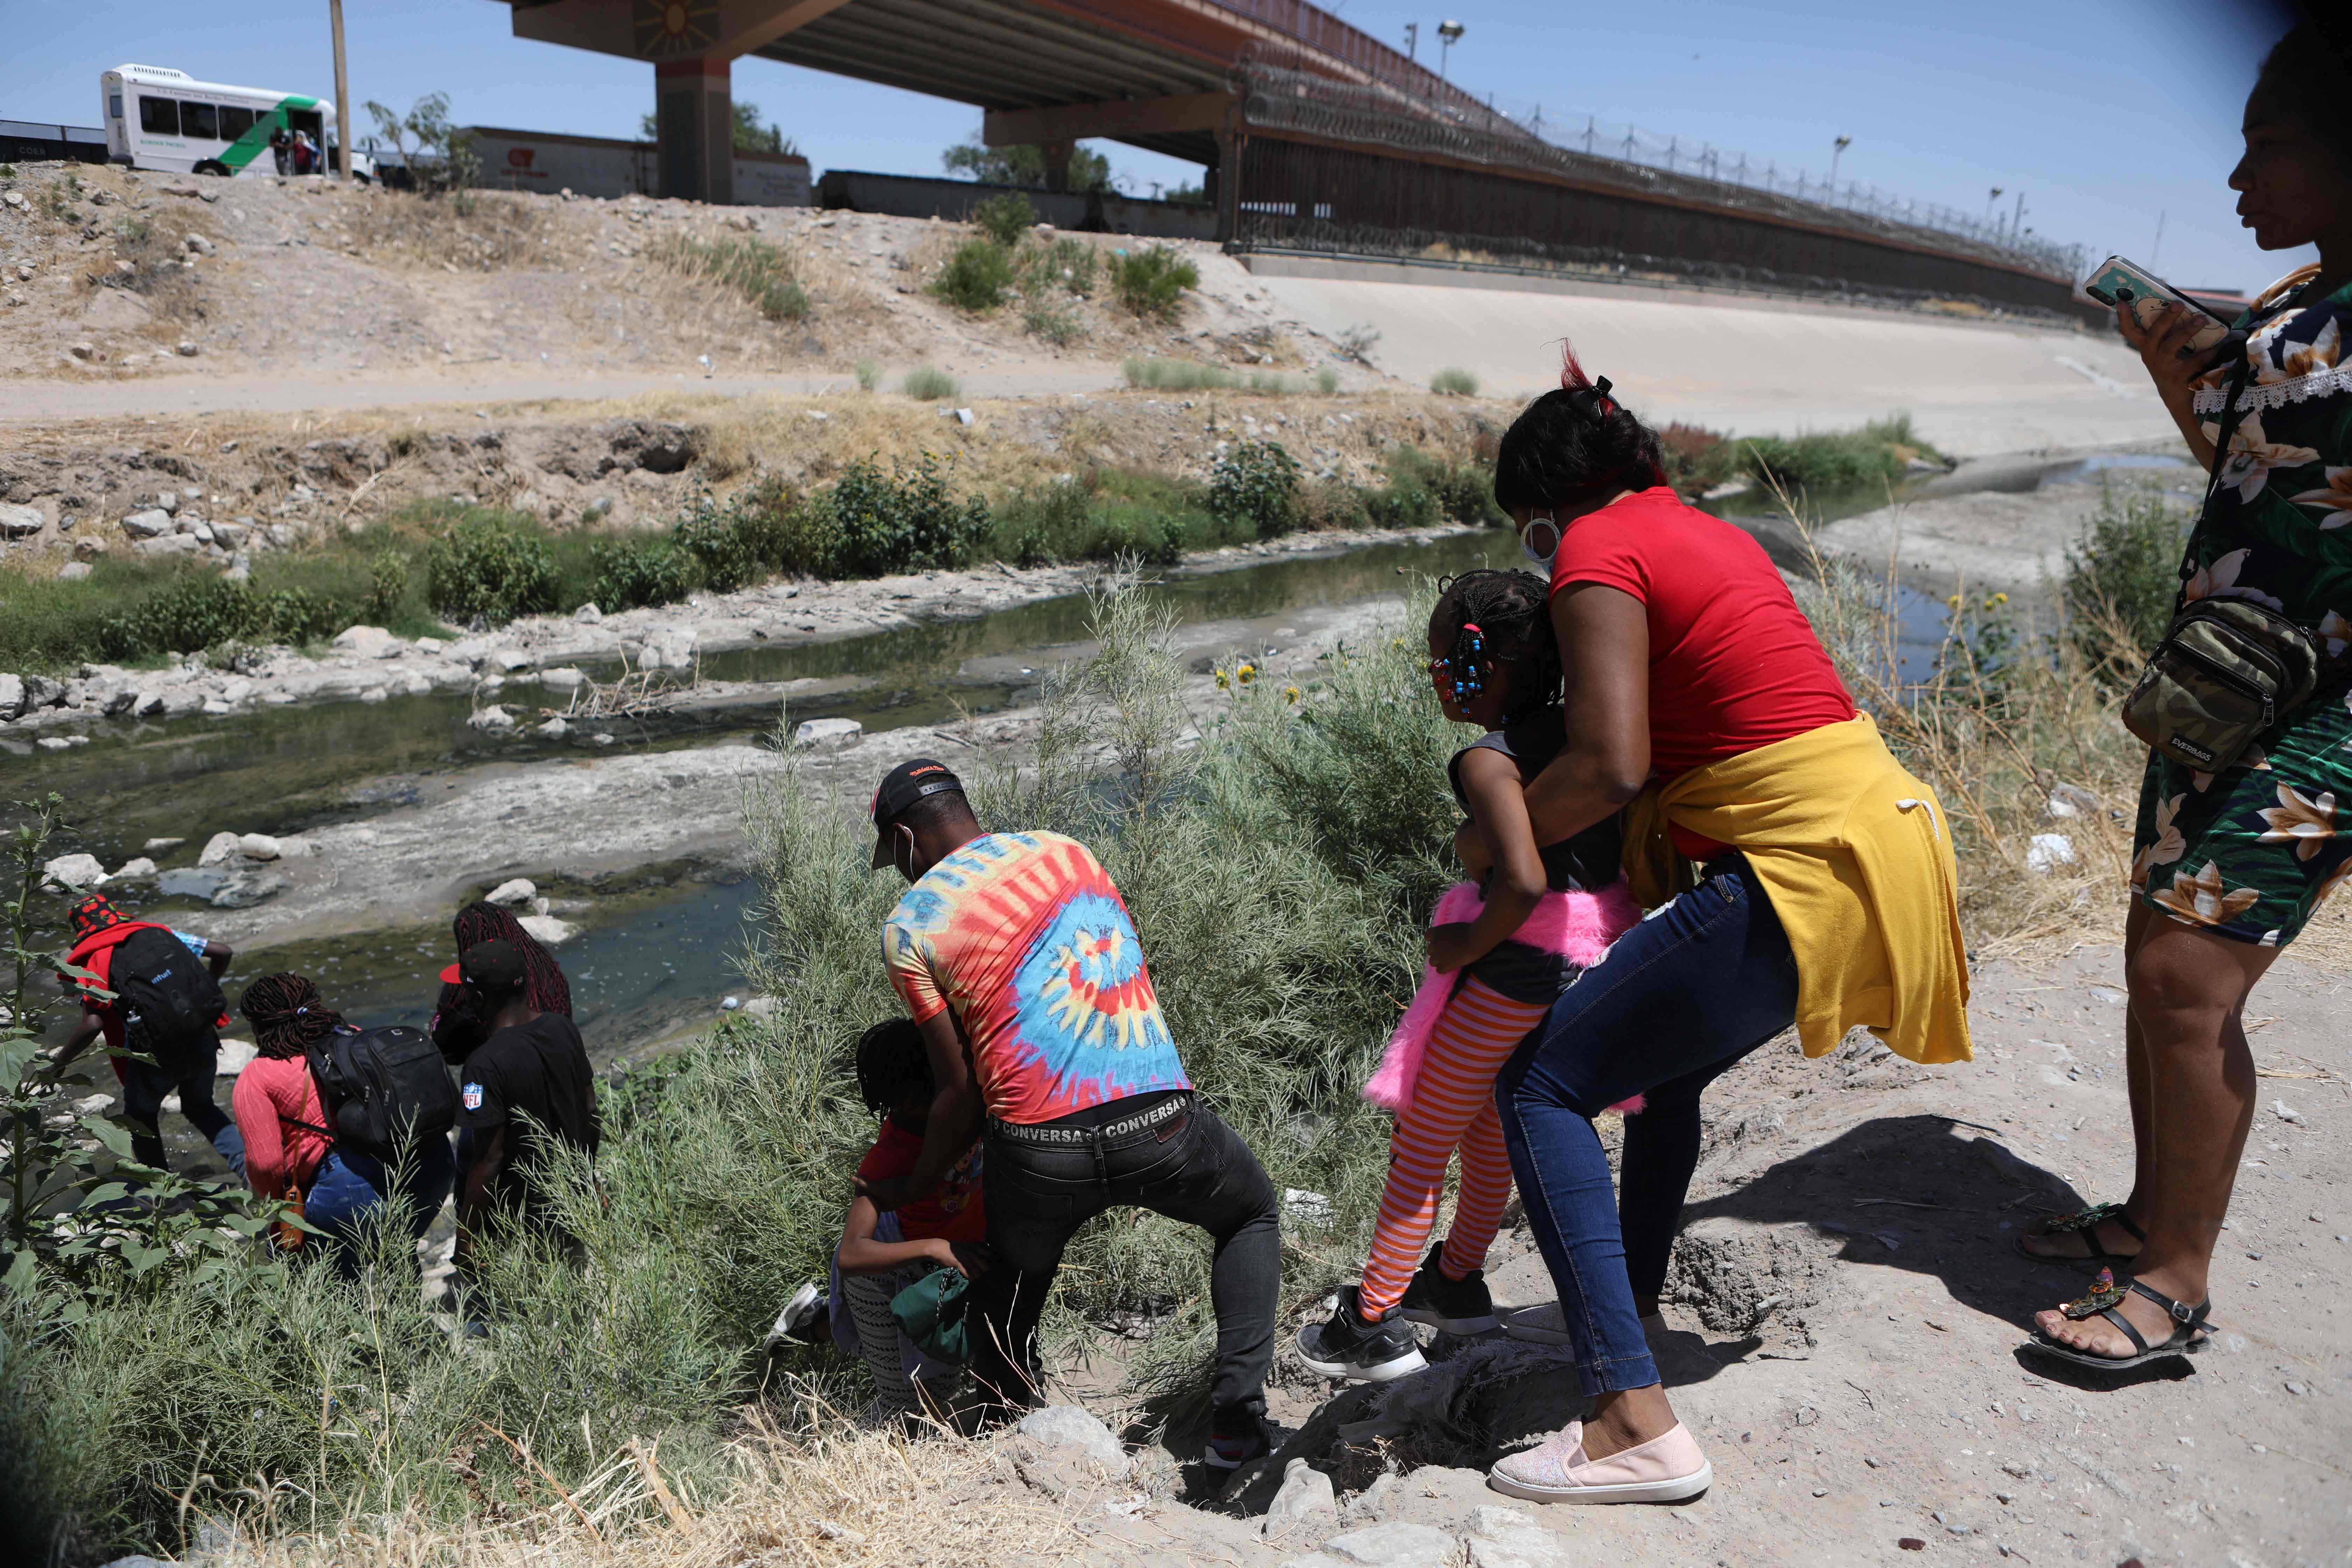 Migrantes cruzan el río Bravo, entre Ciudad Juarez y El Paso, Texas, en un intento por ser admitidos por EE. UU. (Foto Prensa Libre: AFP)